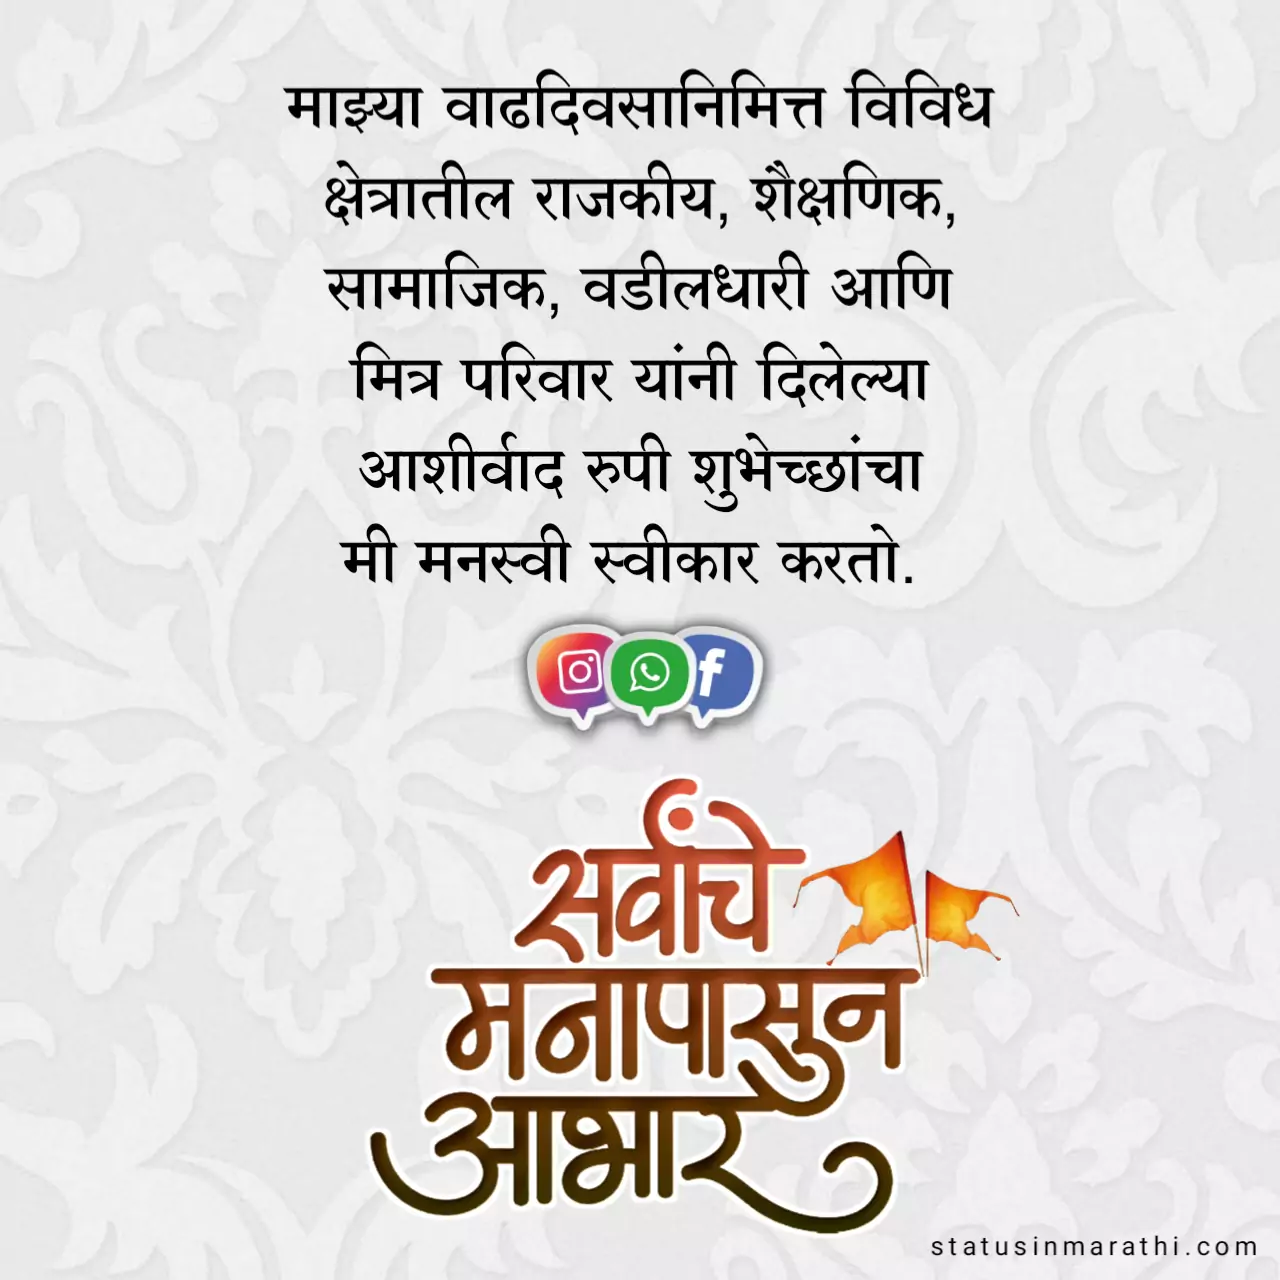 Thanks for birthday wishes marathi